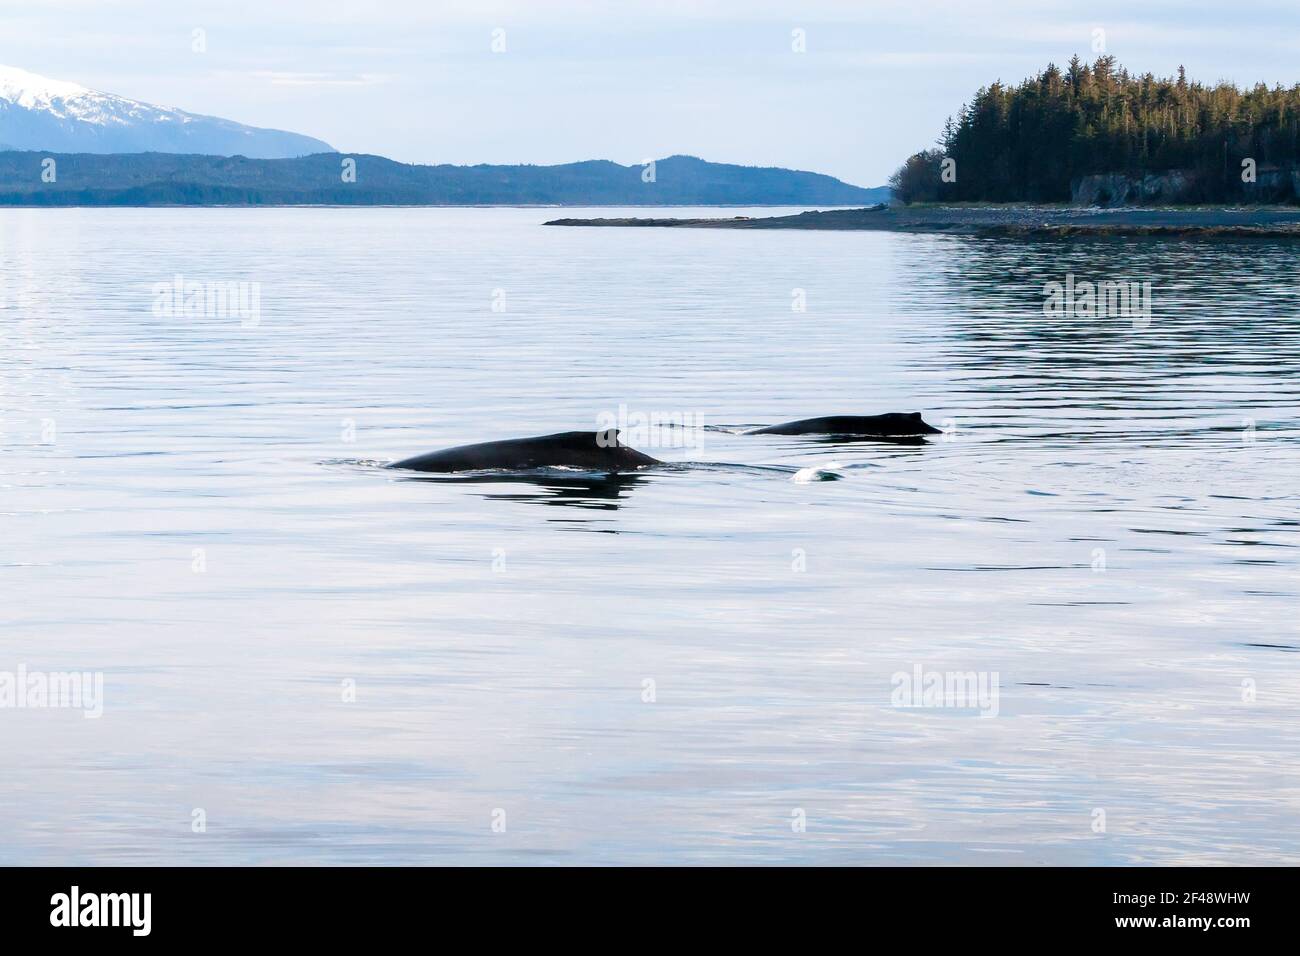 Deux baleines à bosse (Megaptera novaeangliae), une mère et un veau, qui sont en surfaçage au large de la côte sud de l'Alaska Banque D'Images